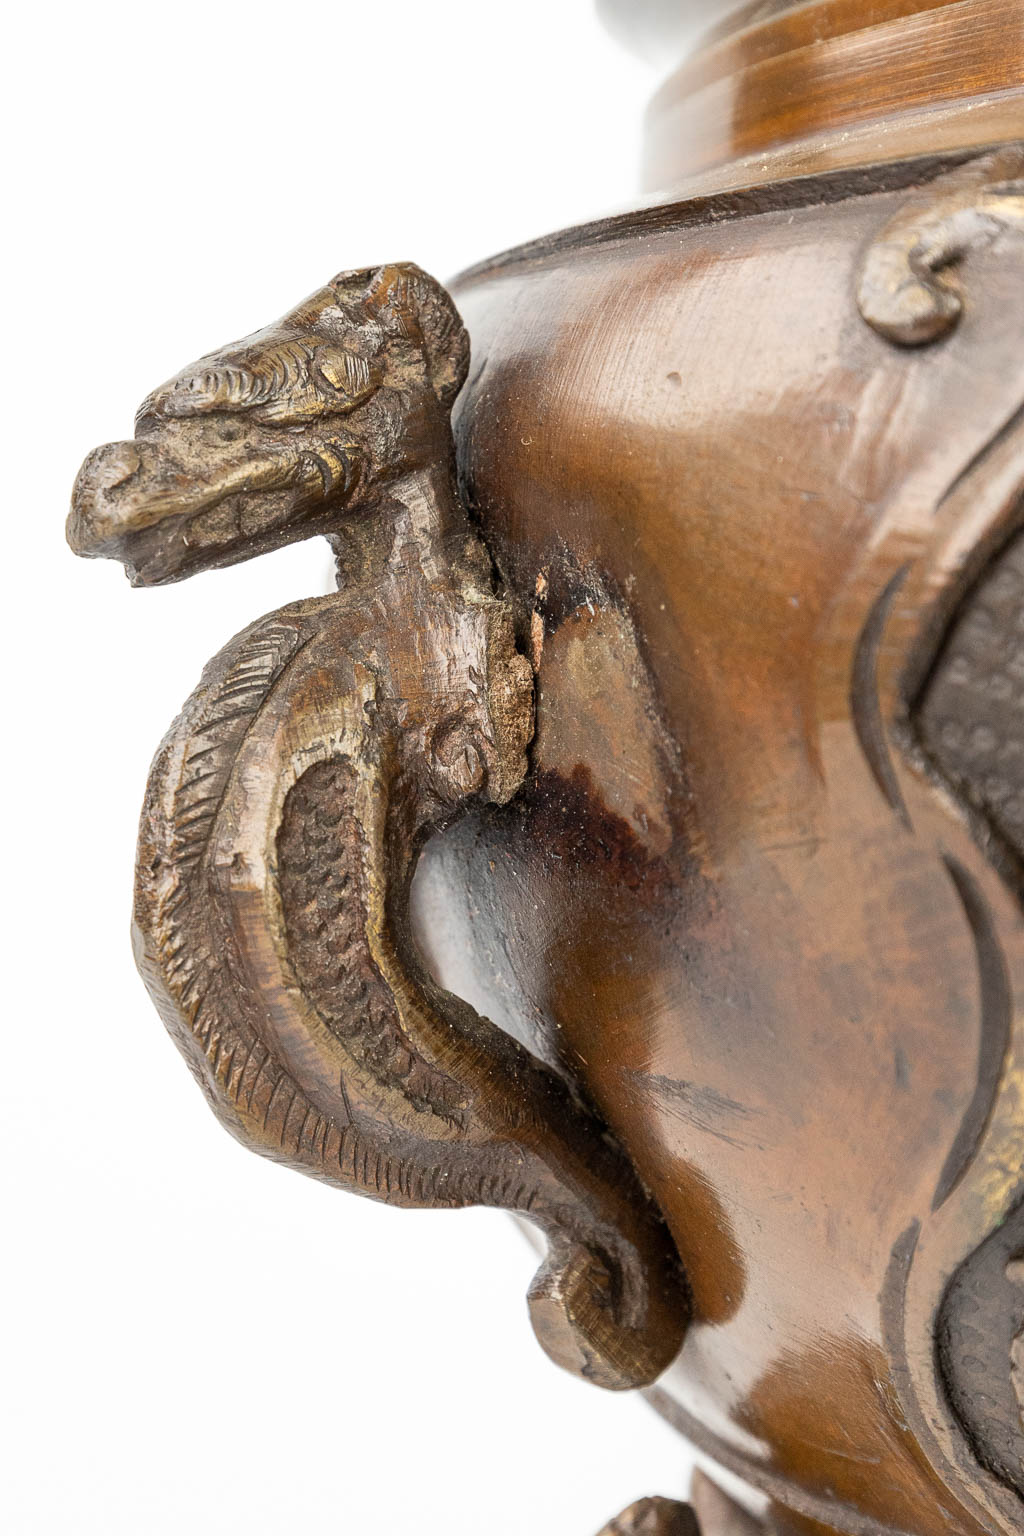 Een brûle-parfum gemaakt uit gepatineerd brons en versierd met figuren. (H:28cm)